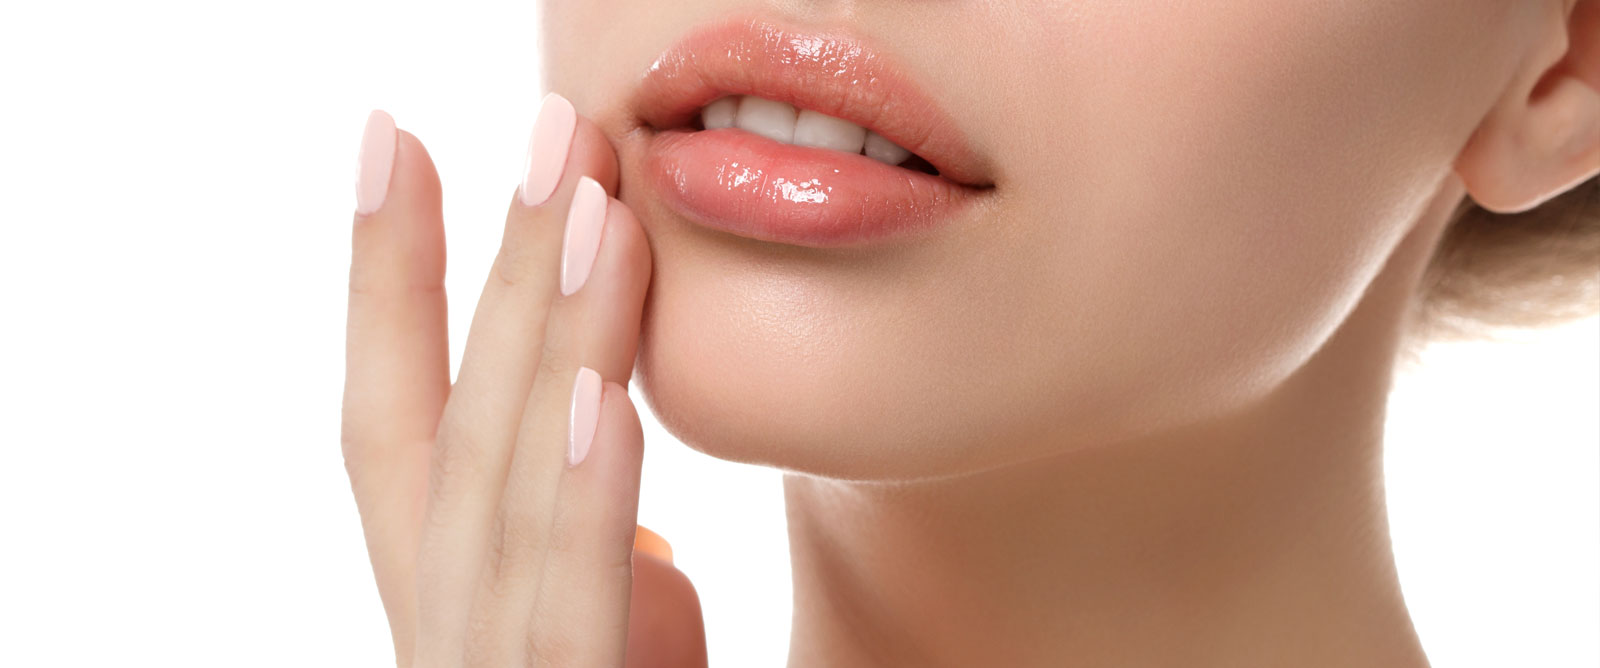 Aumento de labios y otros tratamientos faciales